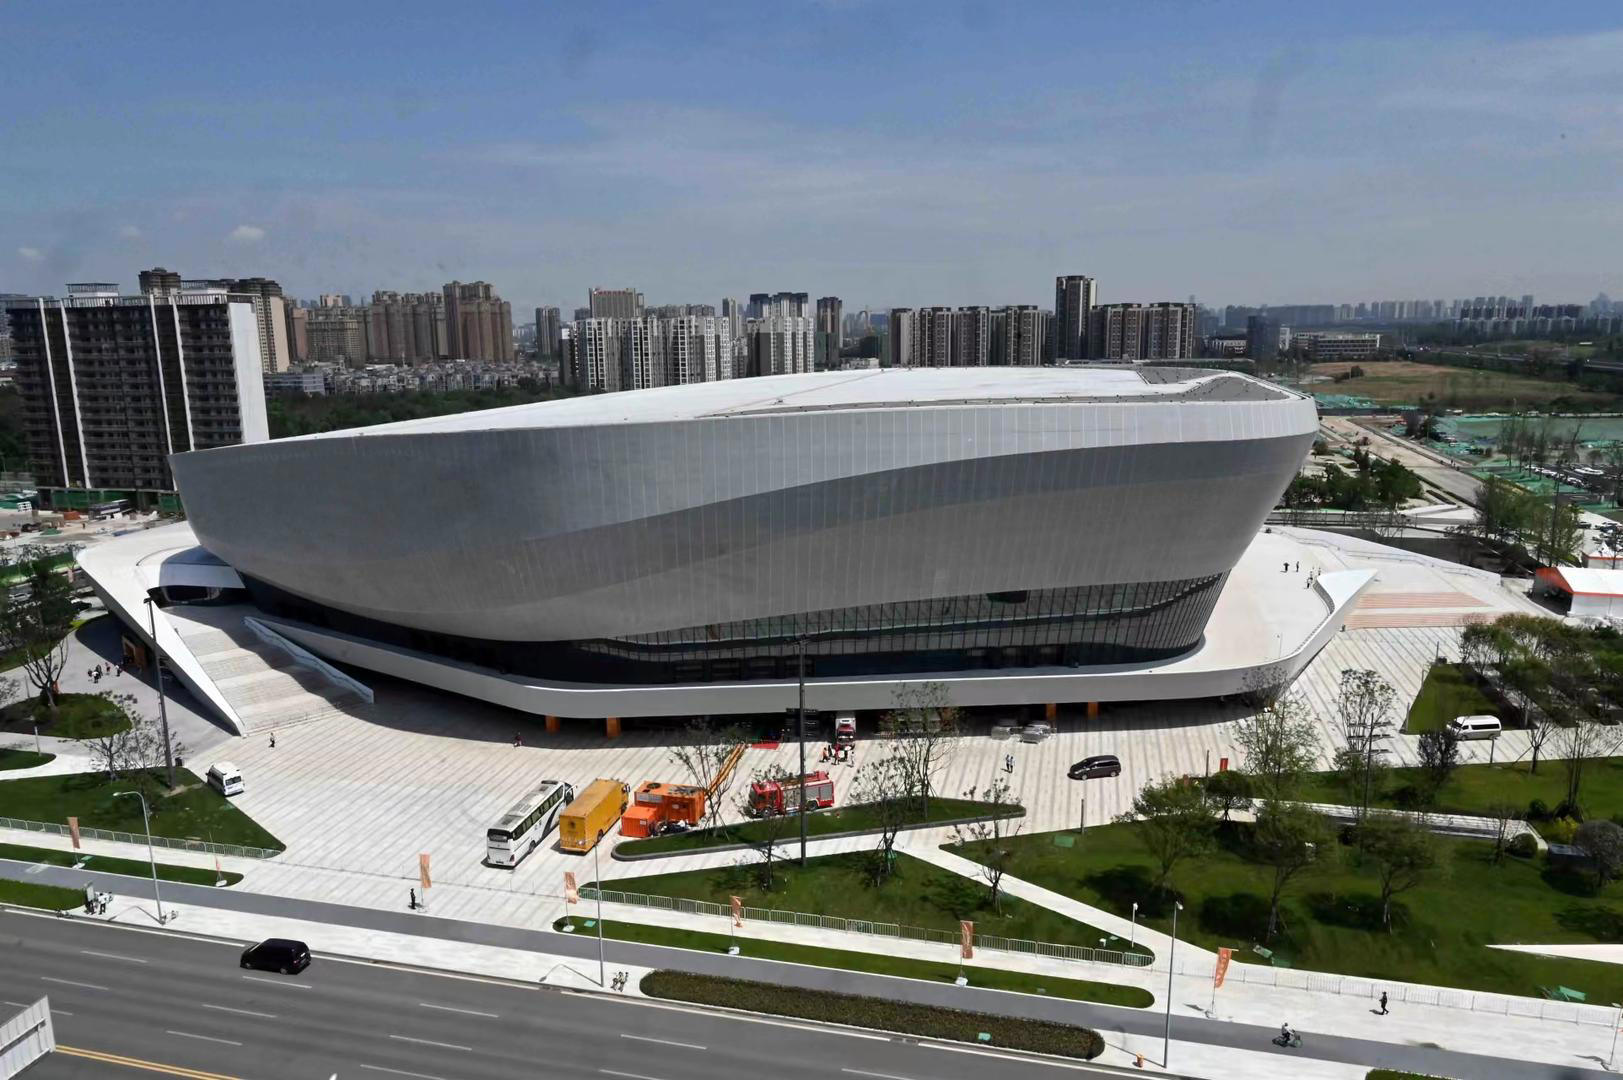 王毅调研高新体育中心并召开2024年汤尤杯筹备工作专题会